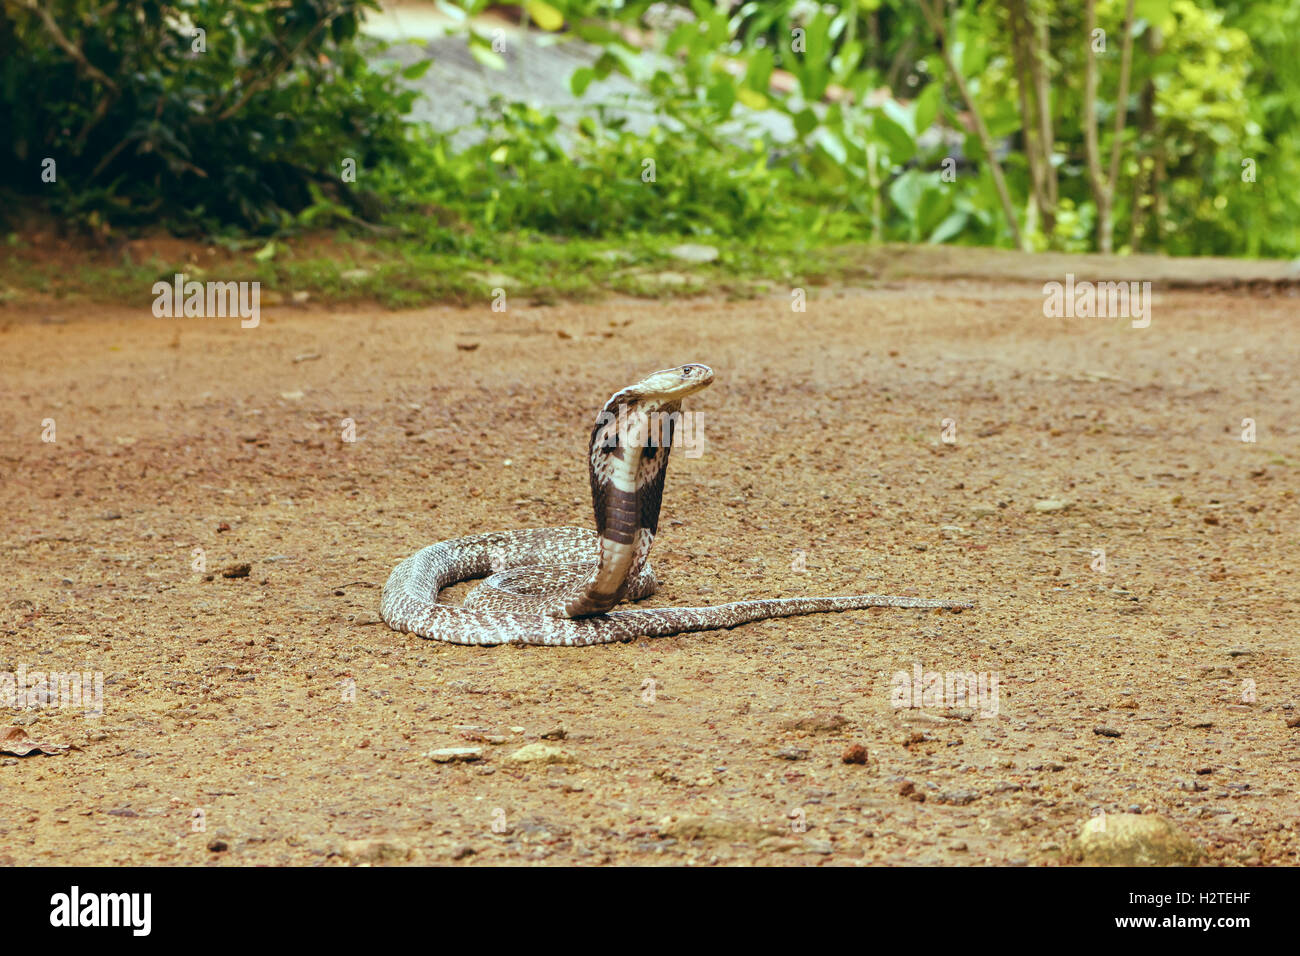 King Cobra Ophiophagus hannah Stock Photo